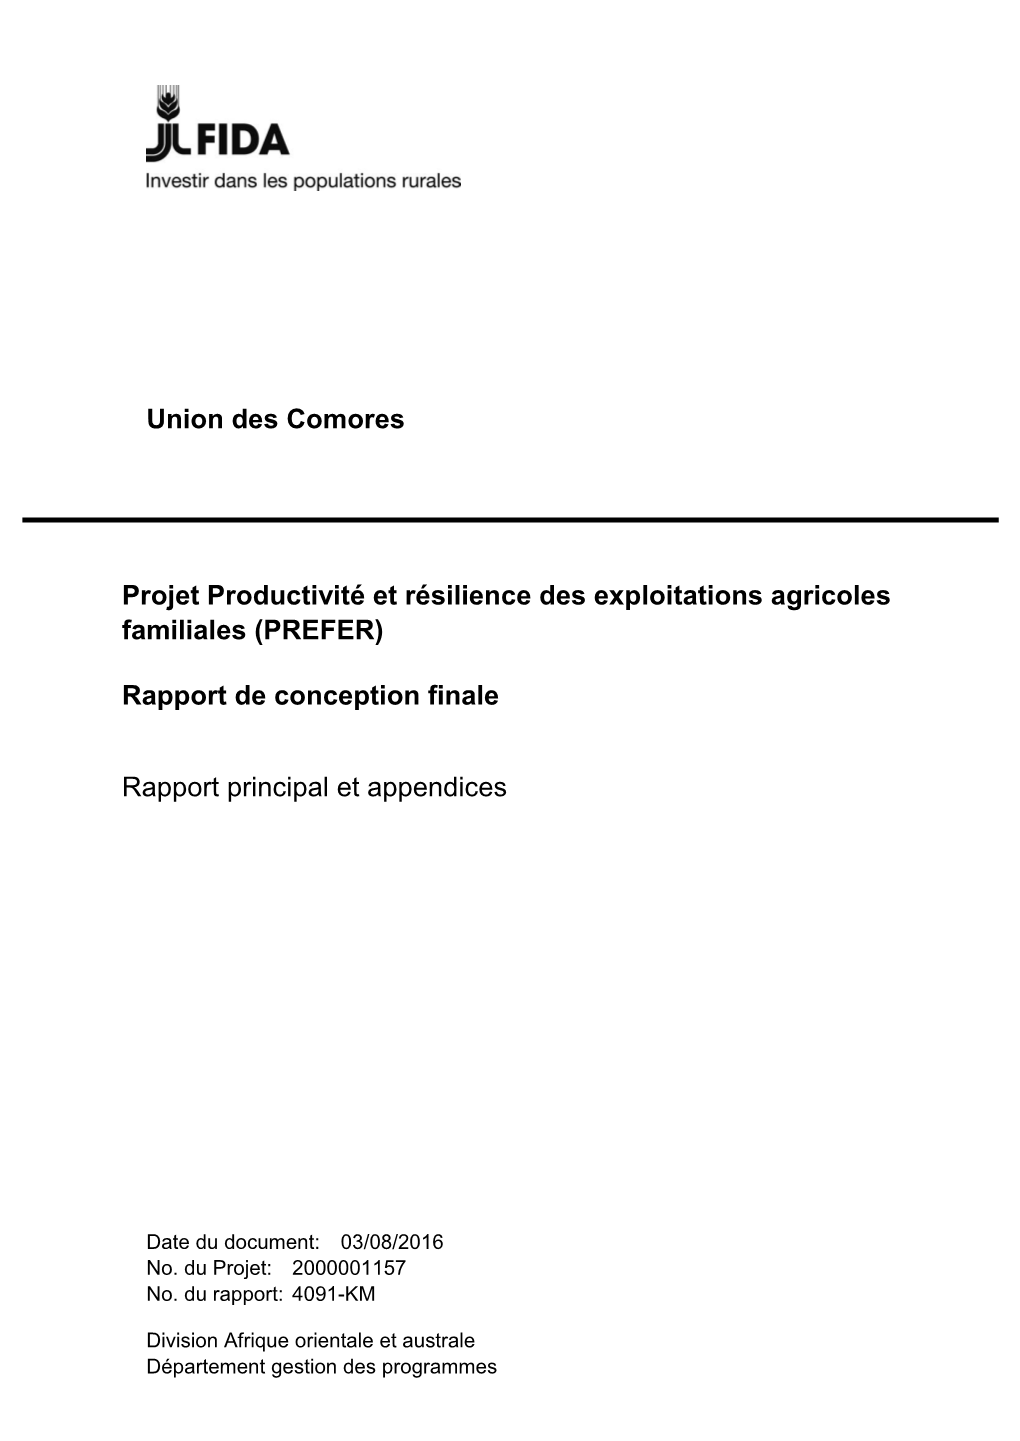 Projet Productivité Et Résilience Des Exploitations Agricoles Familiales (PREFER)